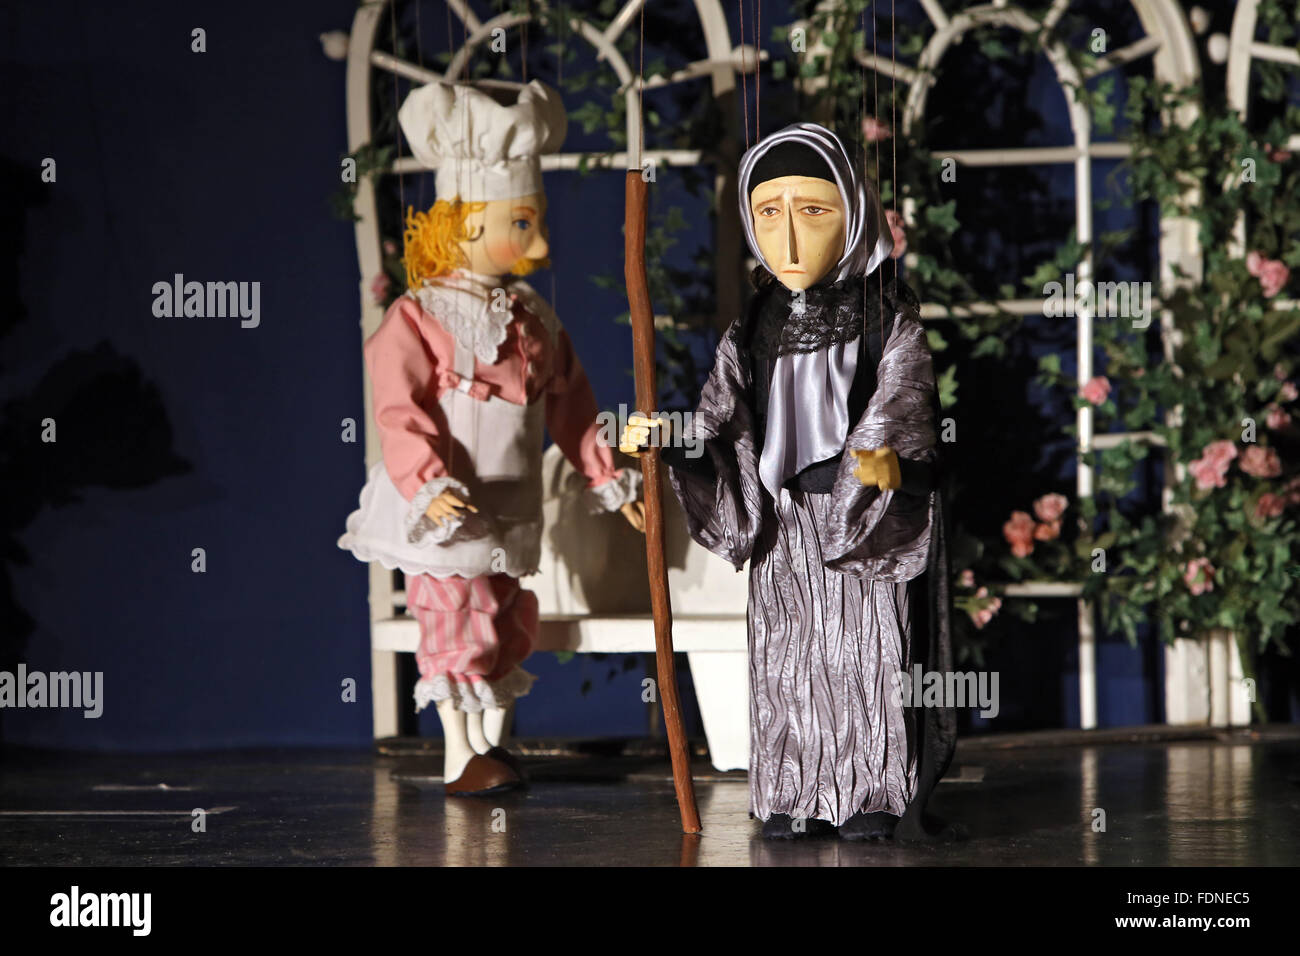 Zuerich, Suisse, de marionnettes Banque D'Images